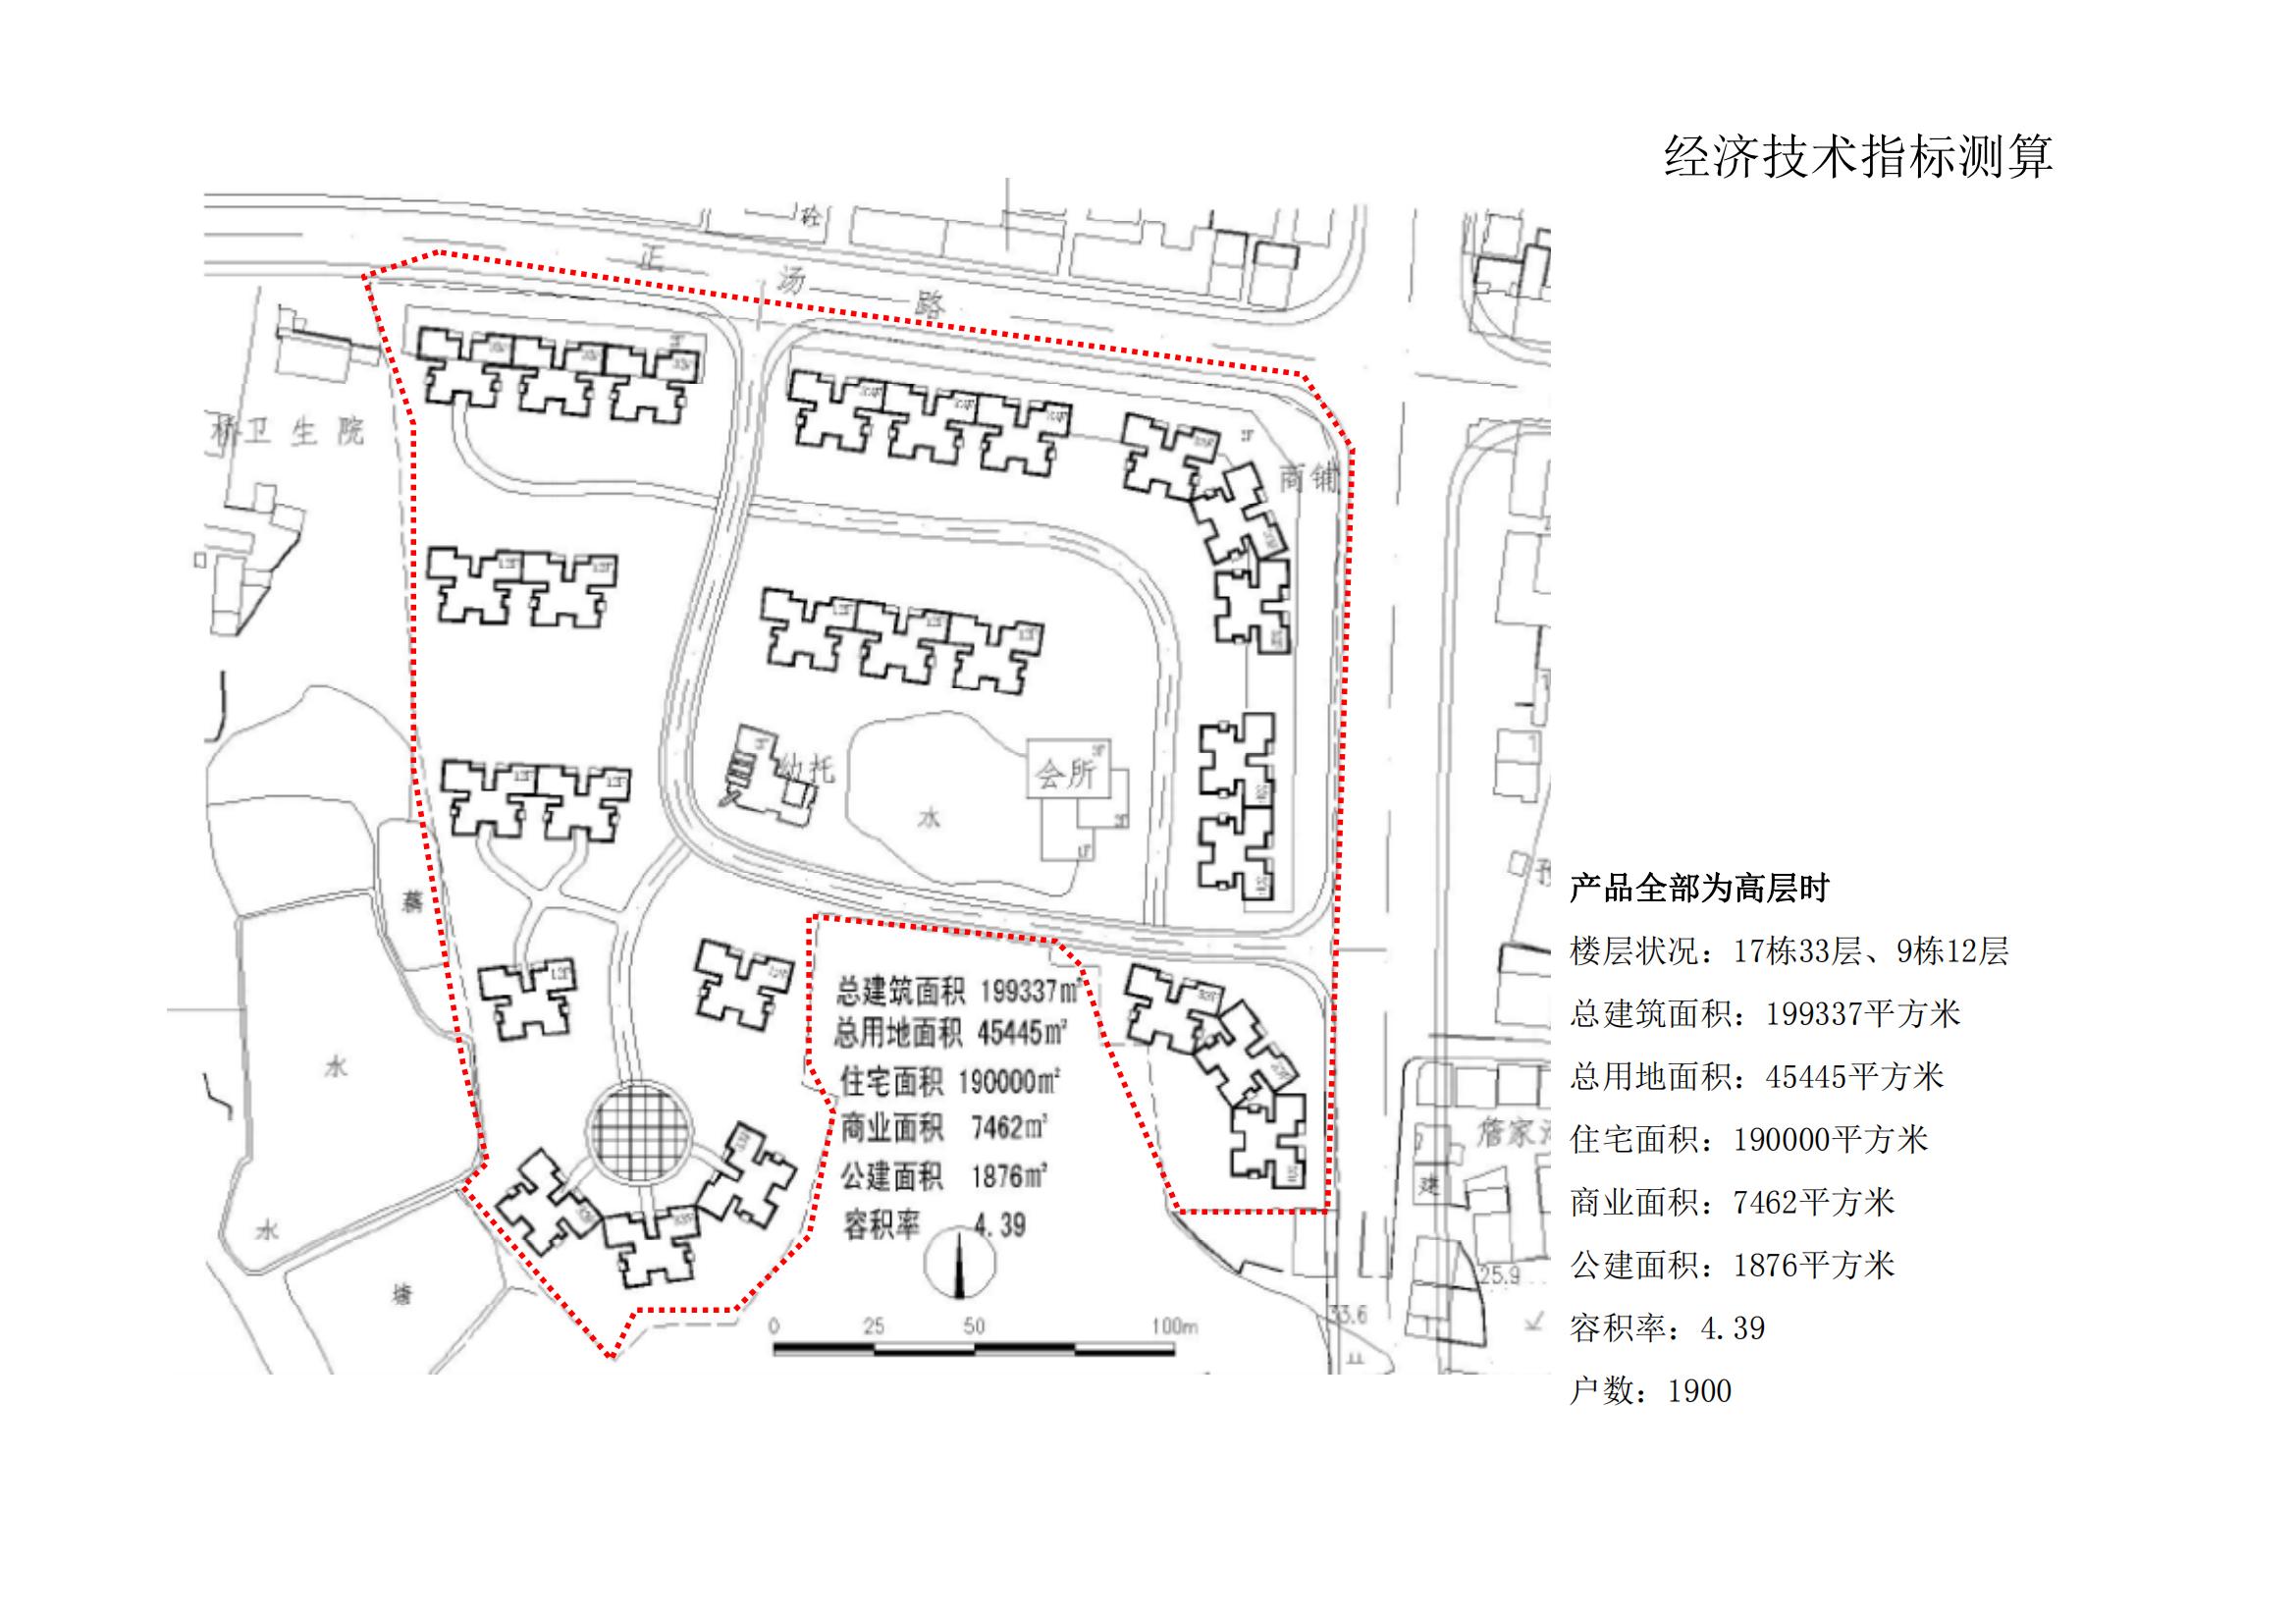 武汉人武集团总部办公楼地块开发策划_35.jpg